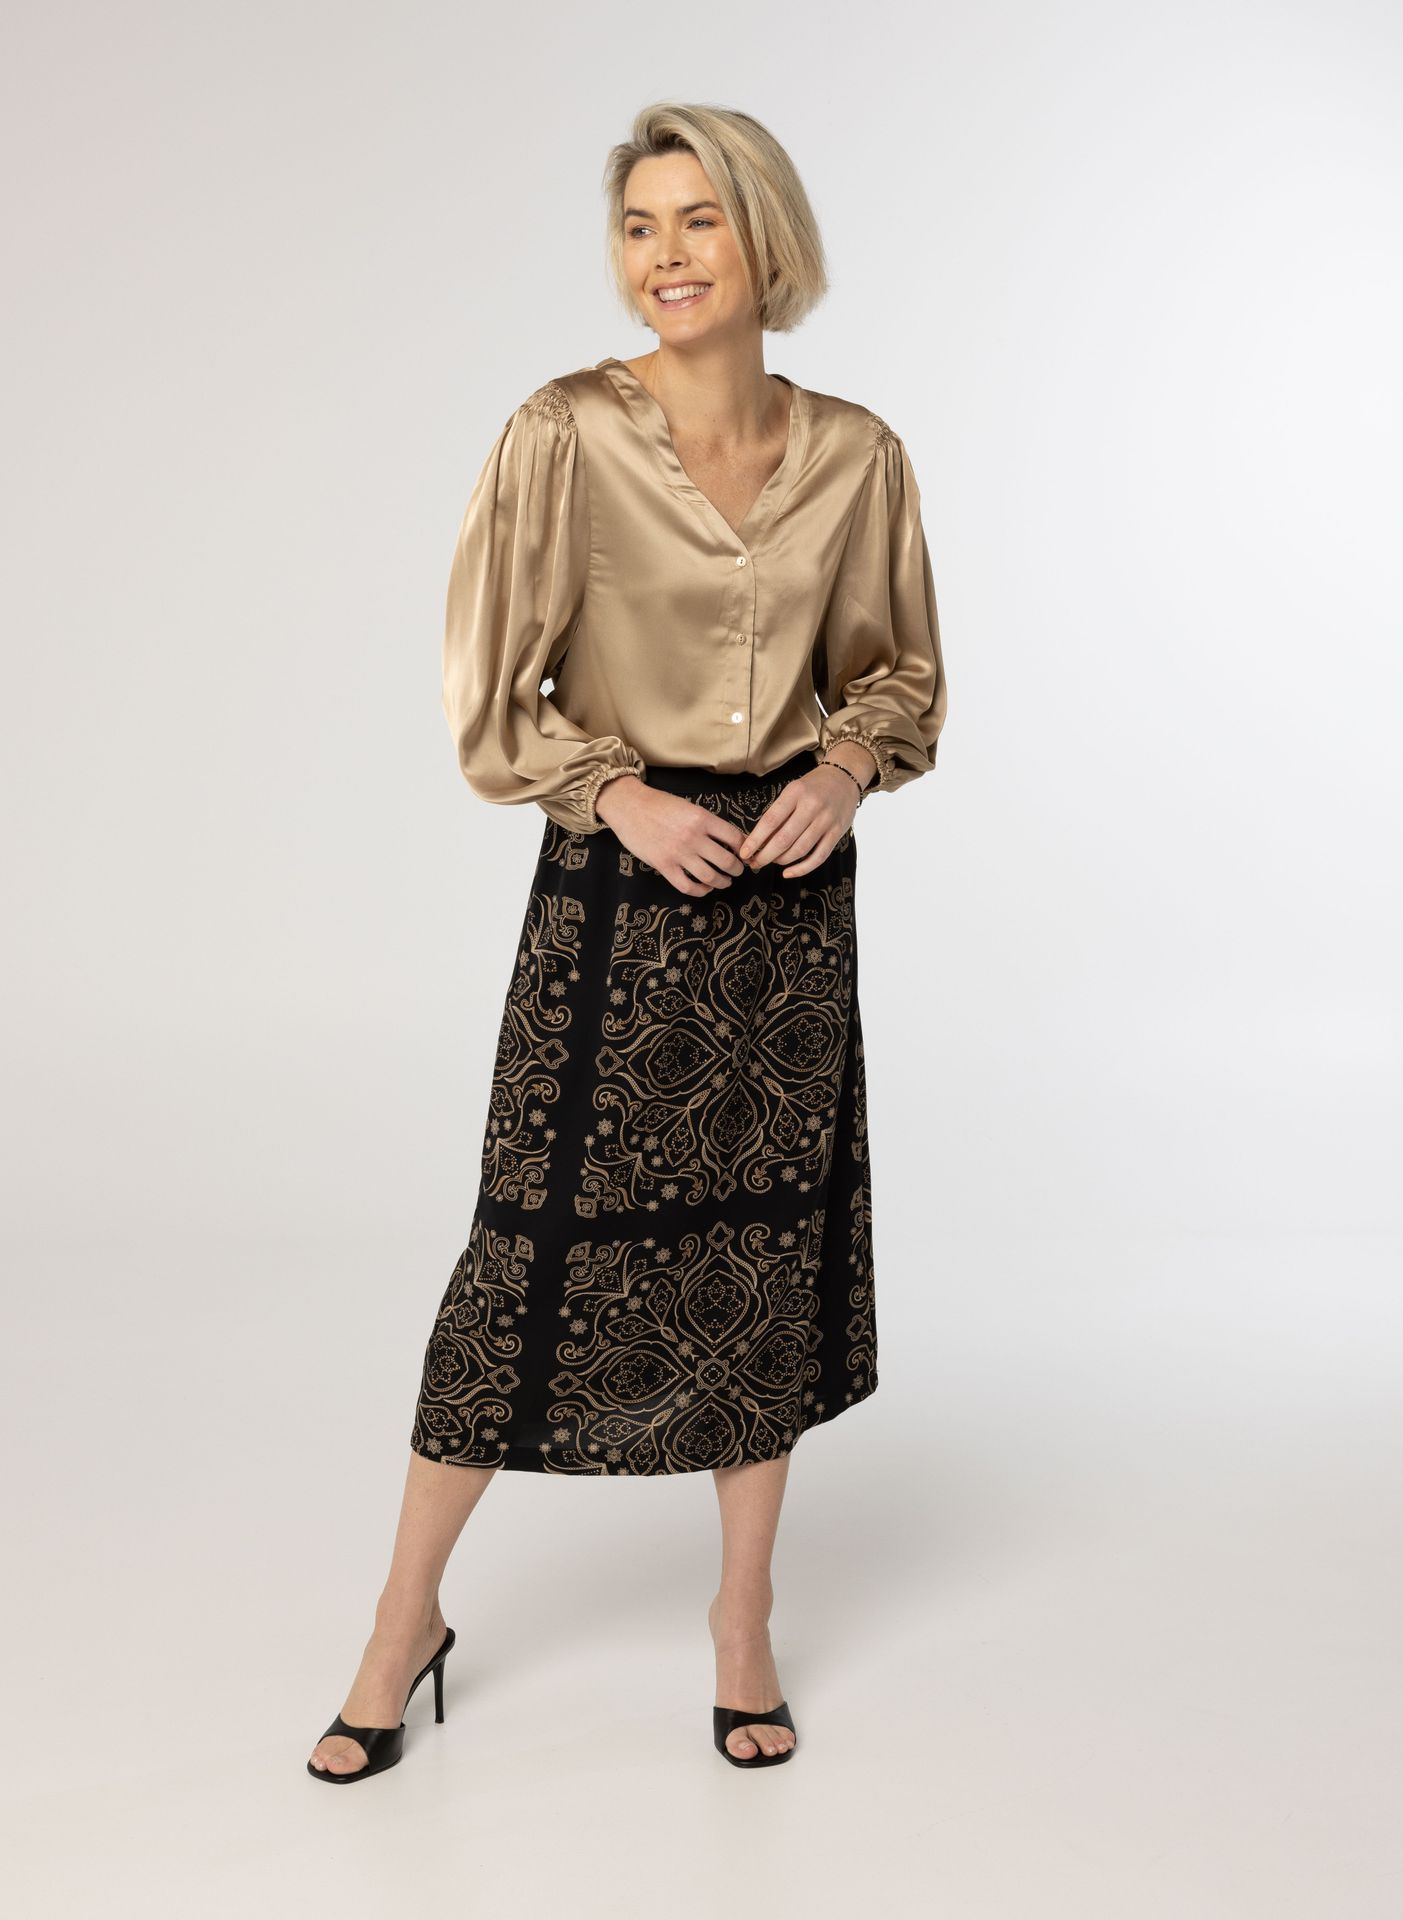 Norah Bronzen blouse met pofmouwen bronze 214267-310